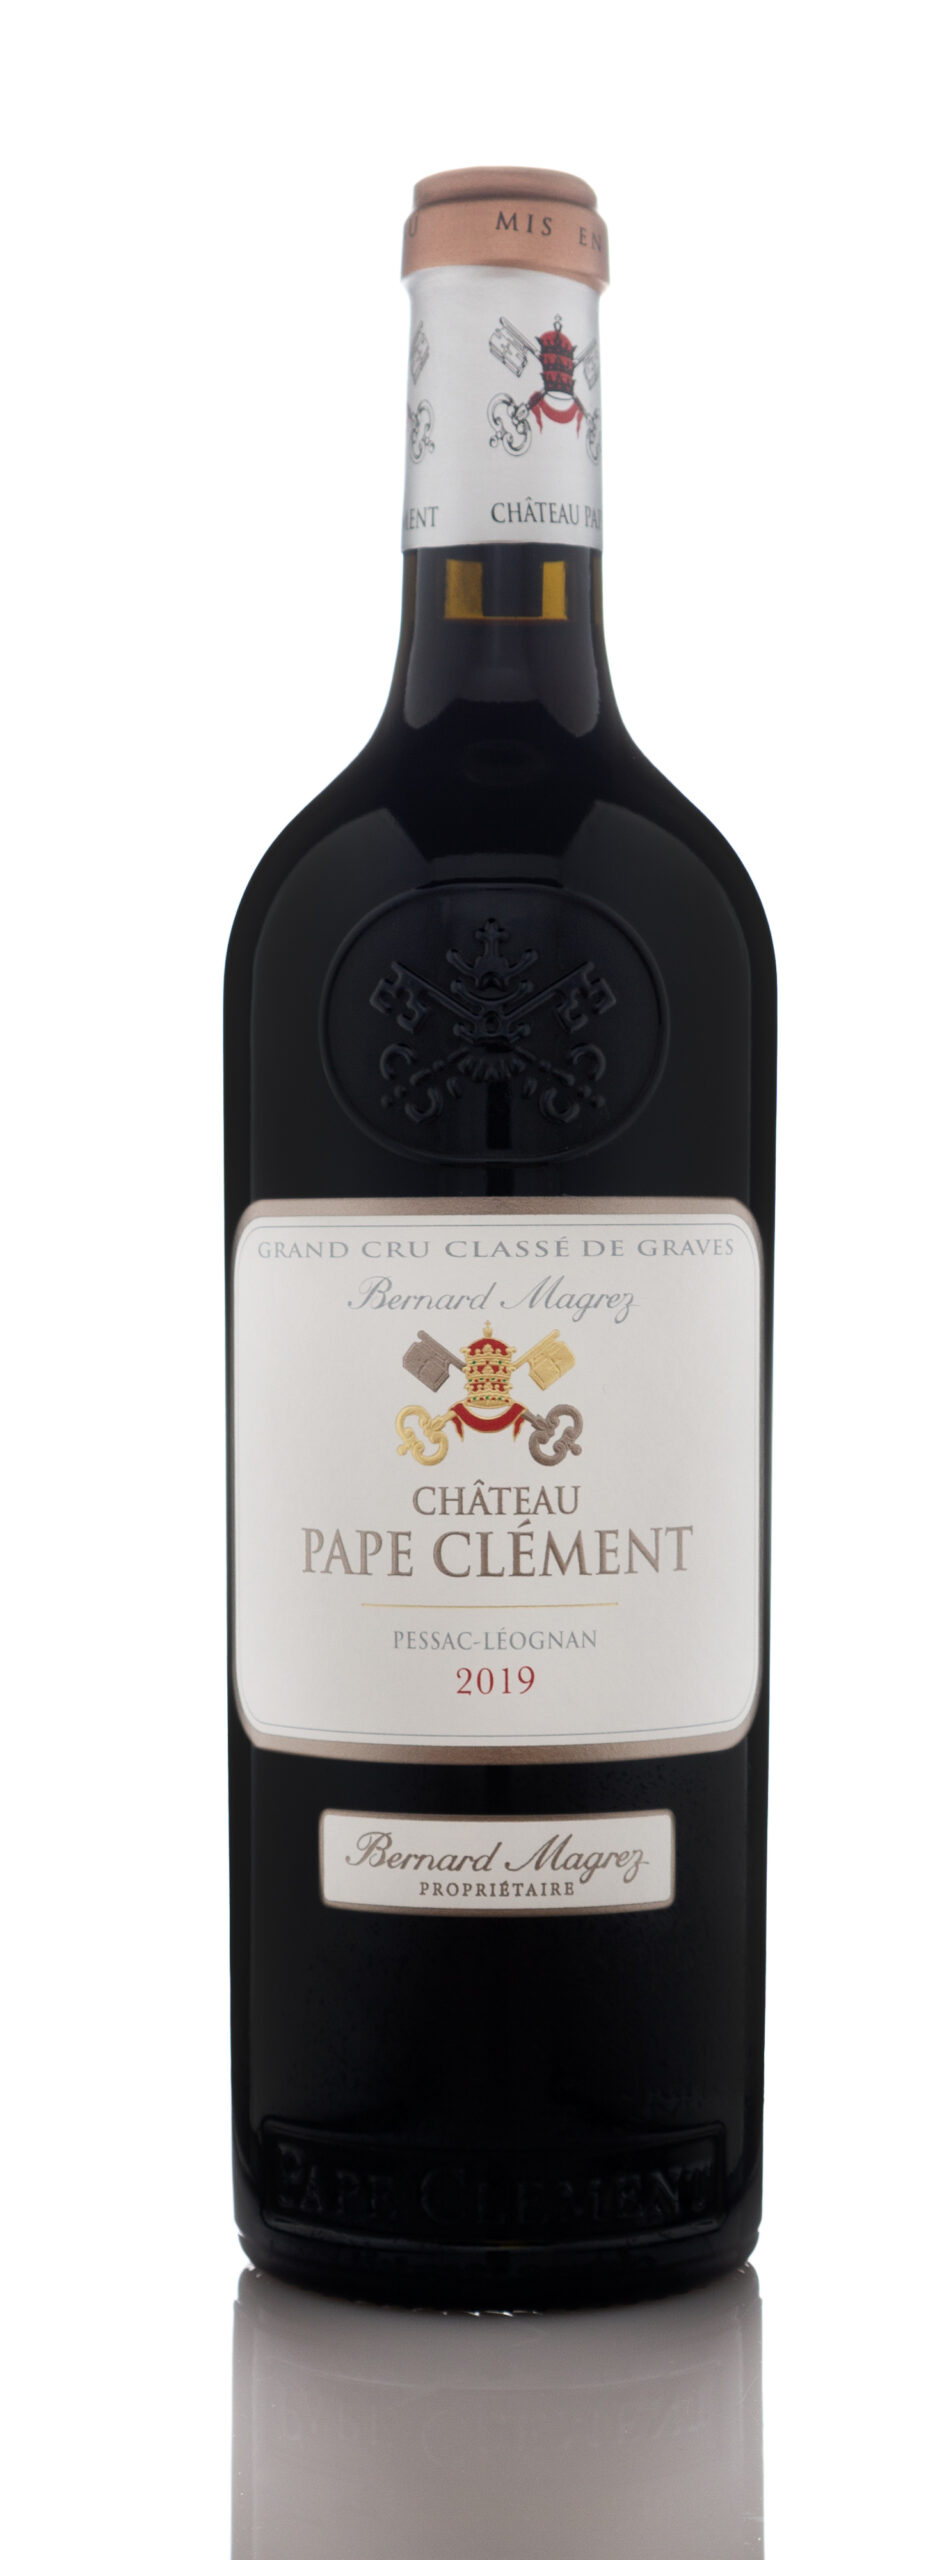 2019 Chateau Pape Clement, Pessac-Leognan